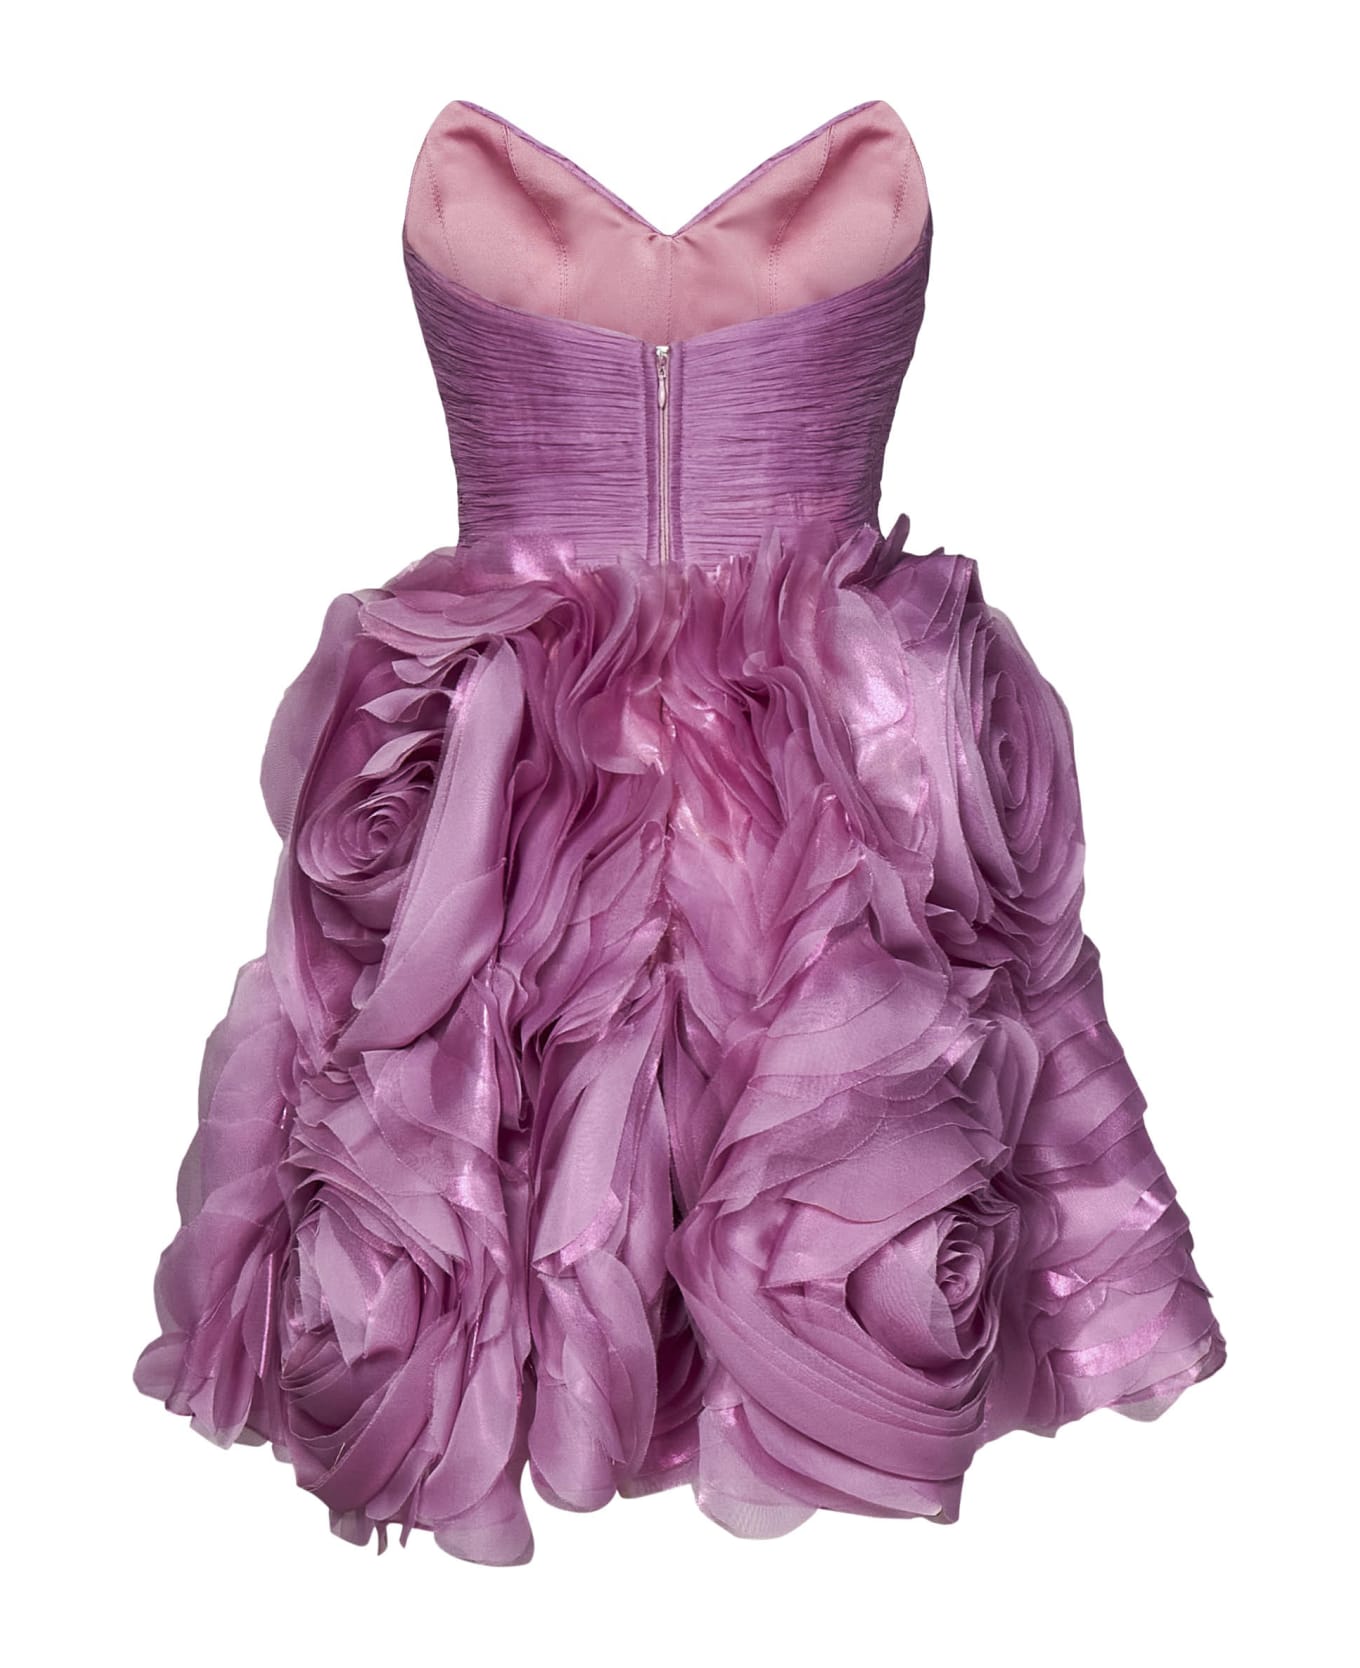 Iris Serban Dress - Pink